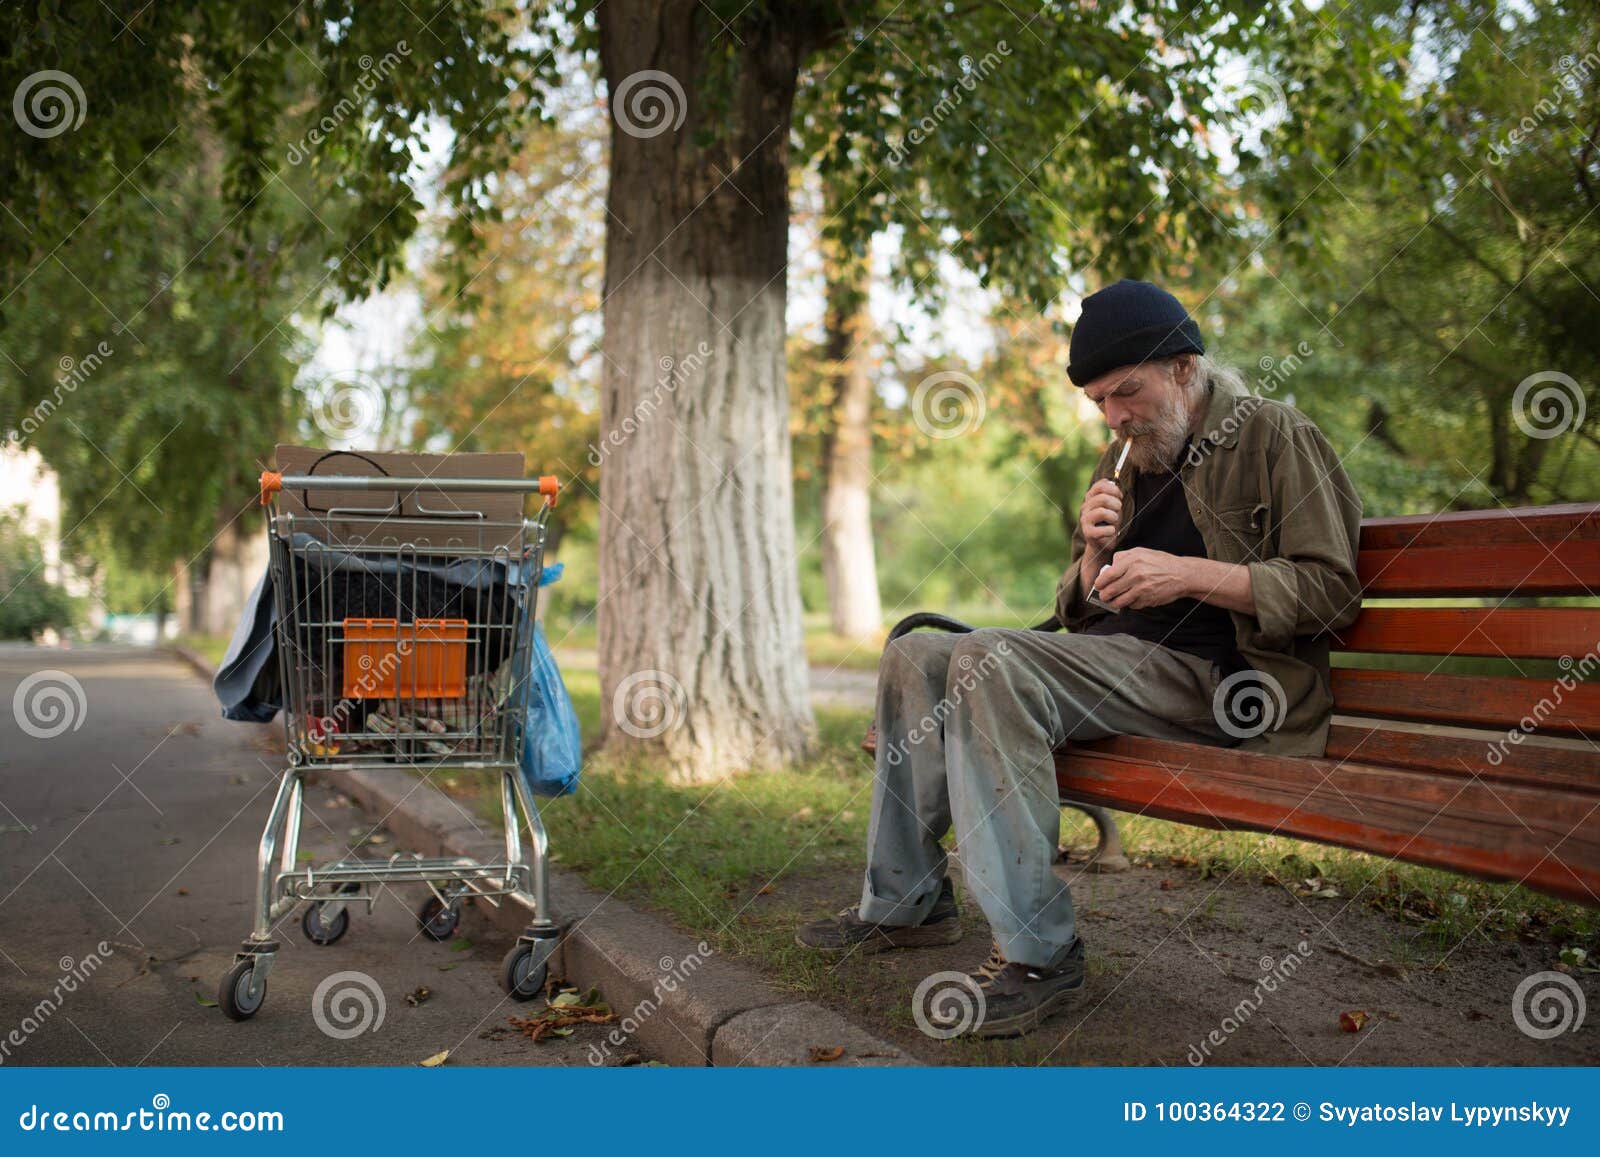 Группа сентябрь женщина курит на лавочке. Бездомный сидит на скамейке. Бездомный мужчина на скамейке.